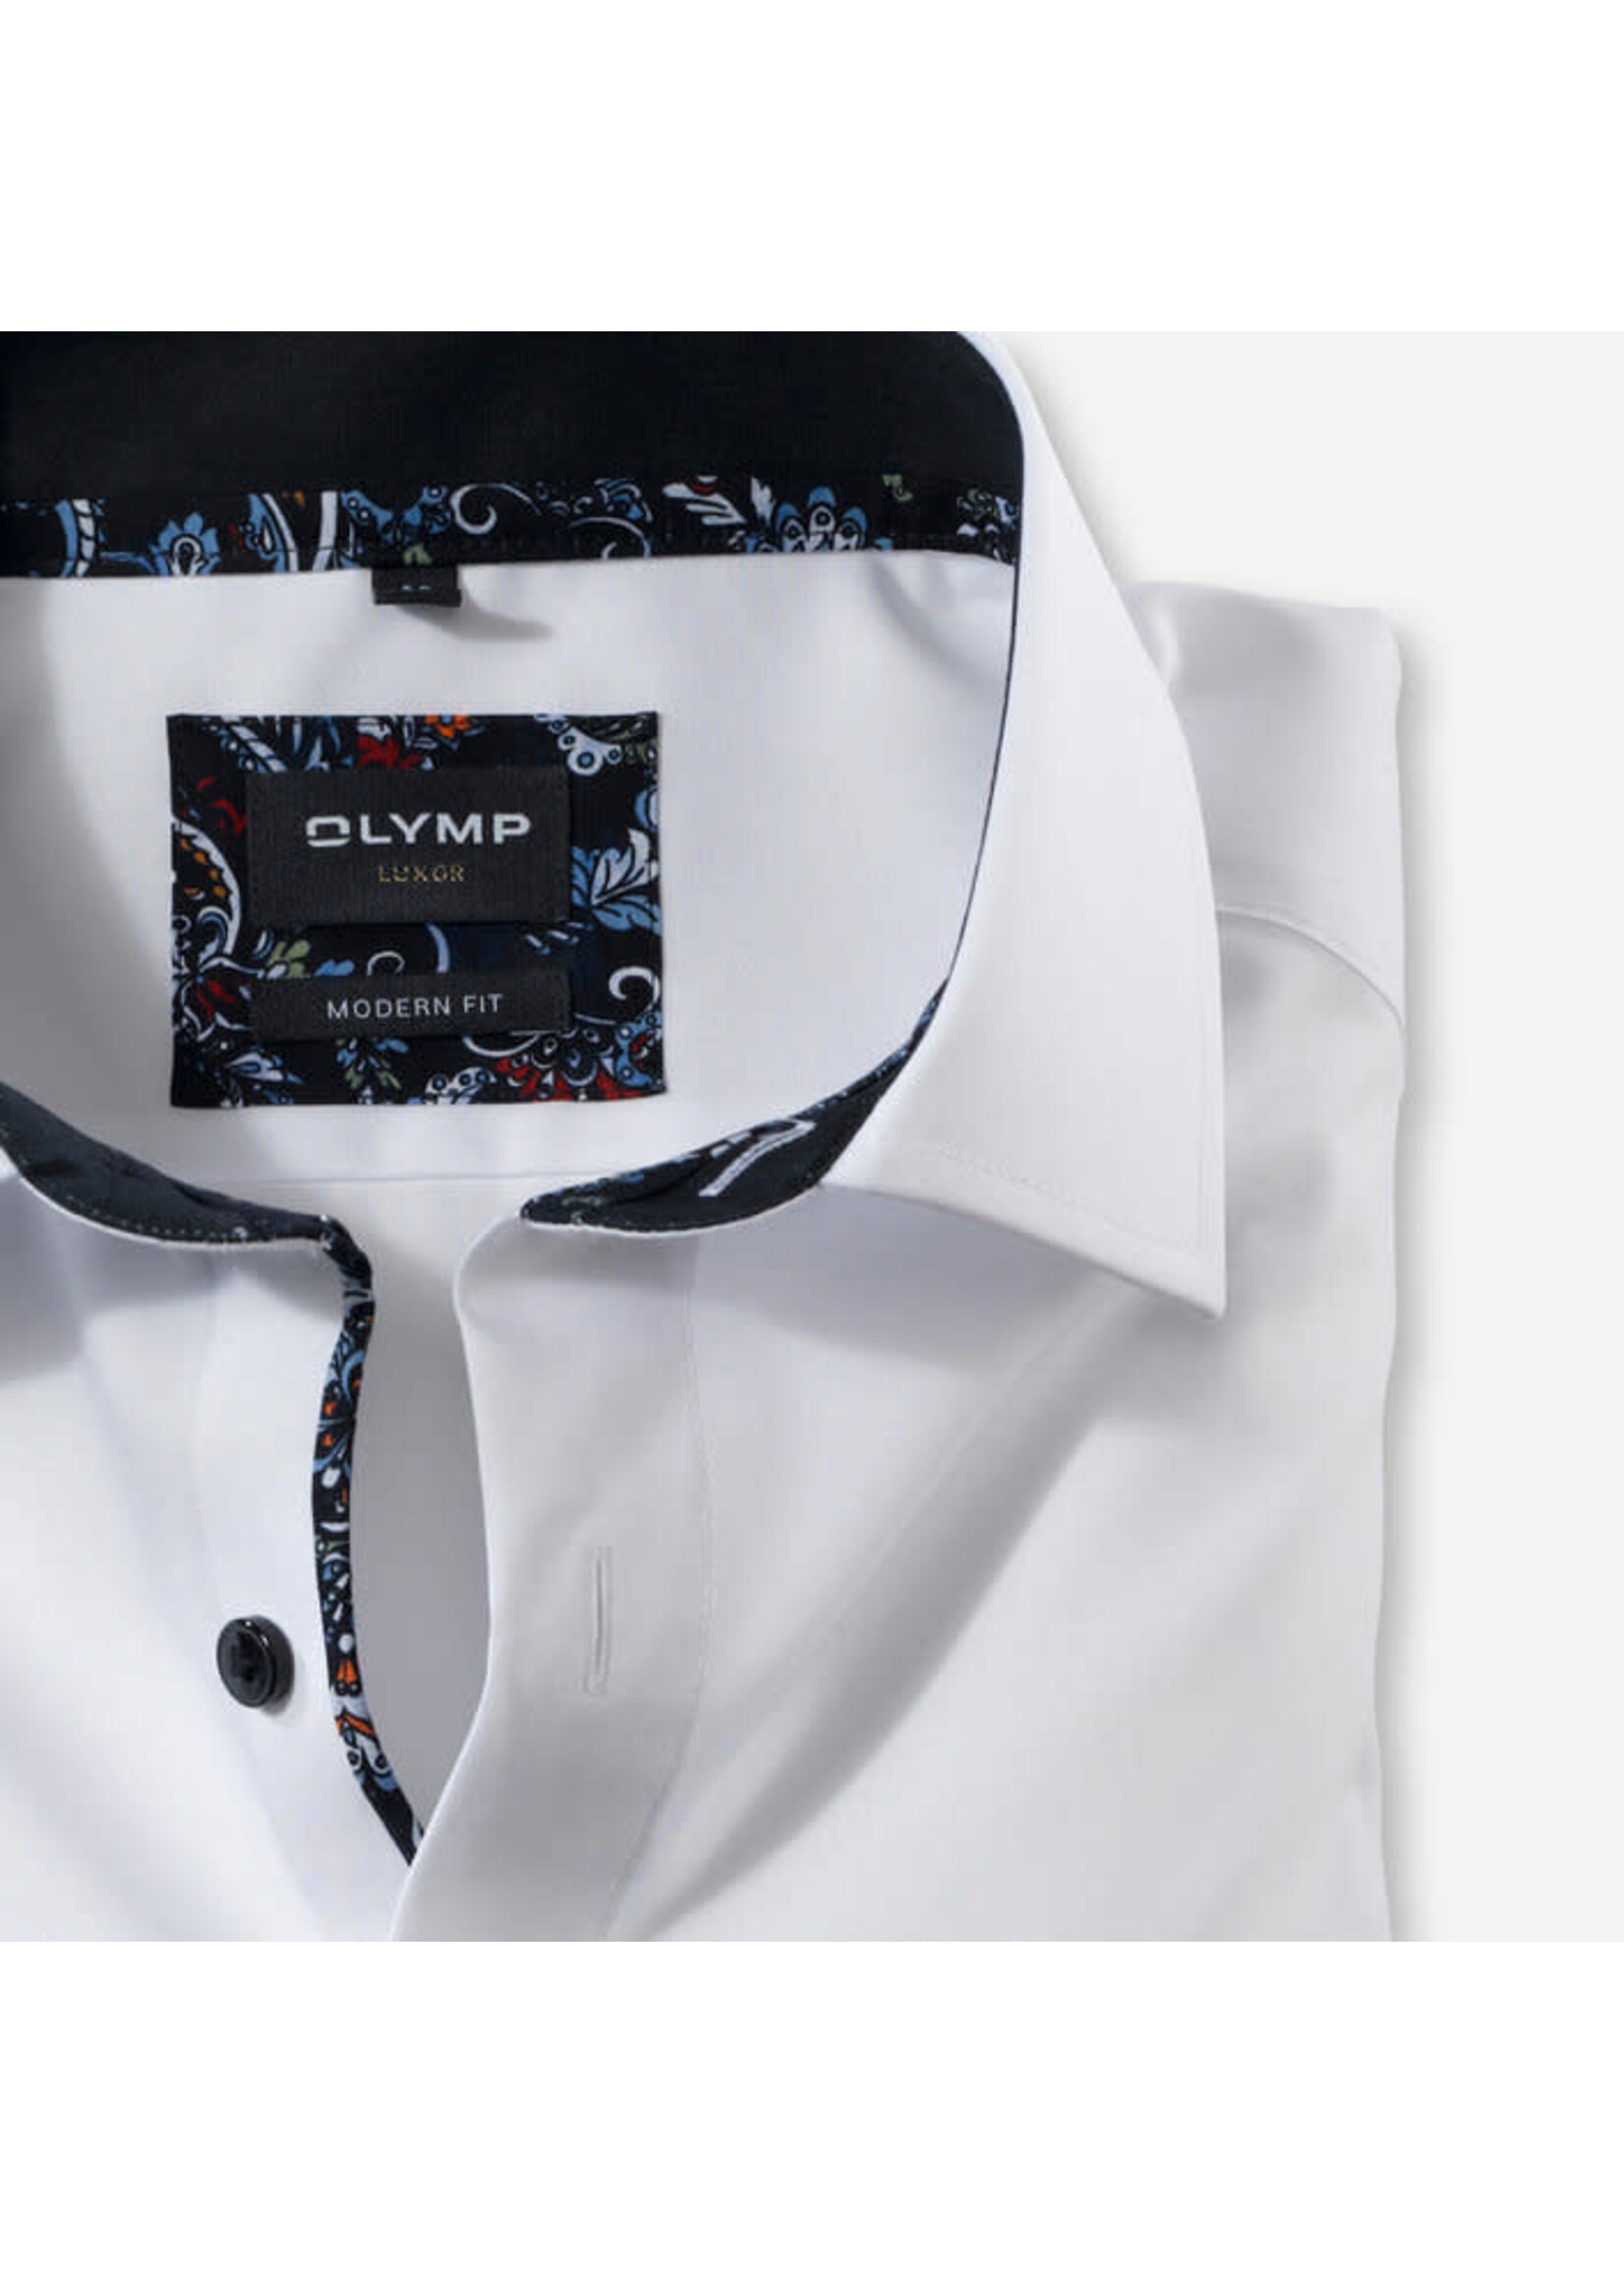 Olymp Olymp  - Modern fit hemd - Verschillende kleuren verkrijgbaar